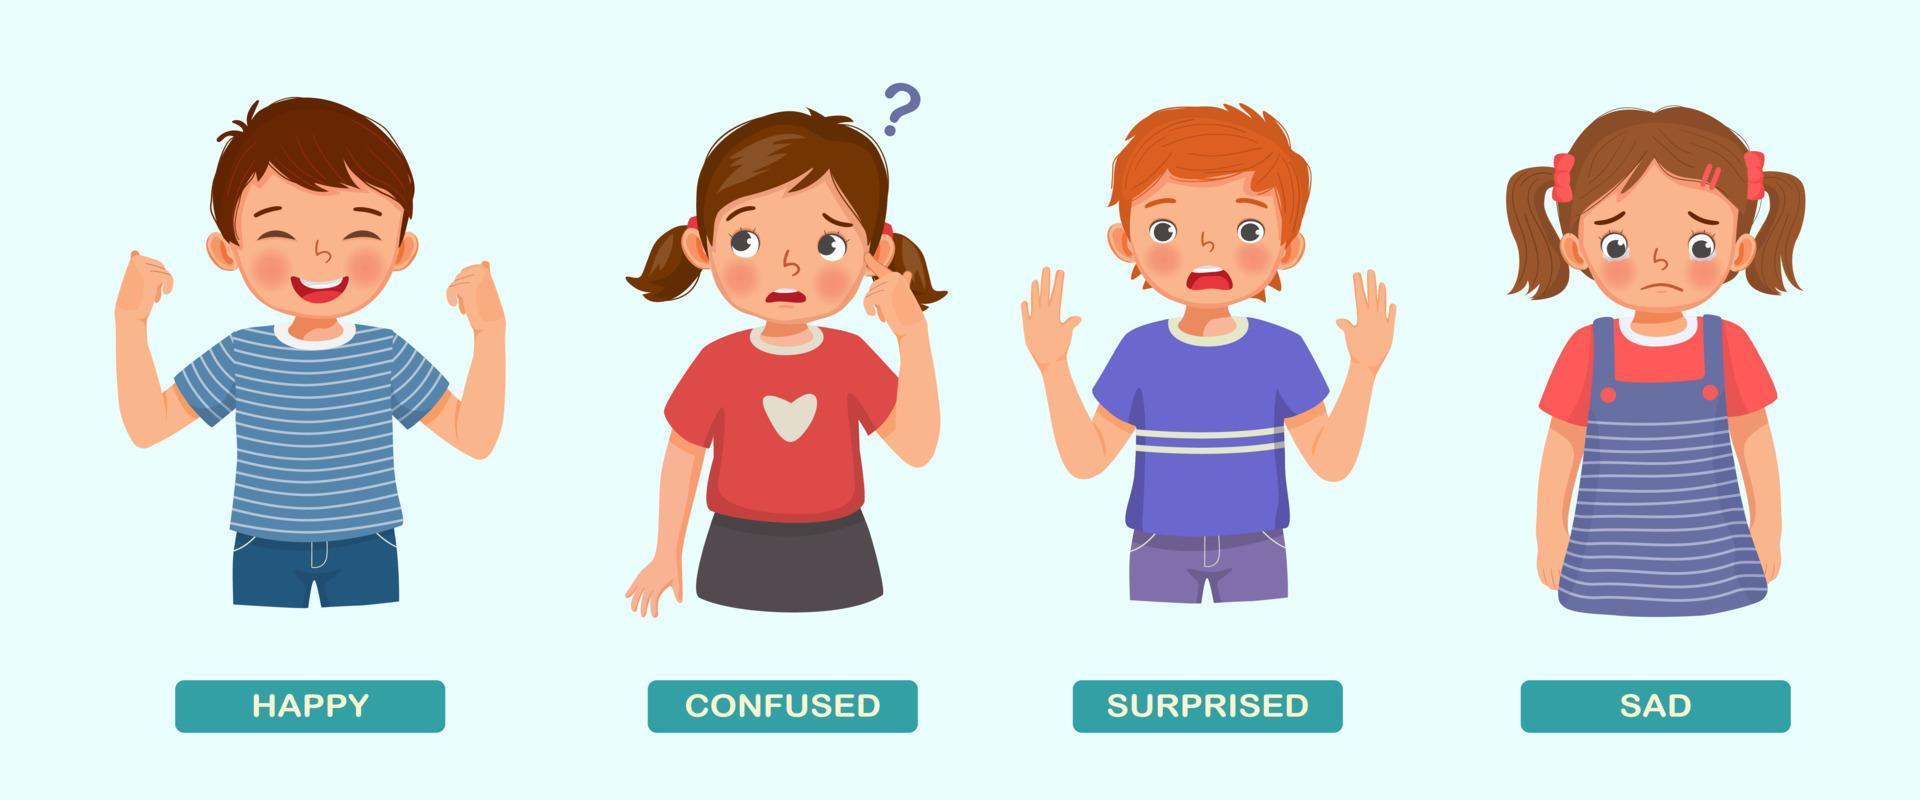 schattig kinderen tonen verschillend gevoel emoties zo net zo Vrolijk, verward, verrast, en verdrietig met hand- gebaren en gelaats uitdrukkingen vector